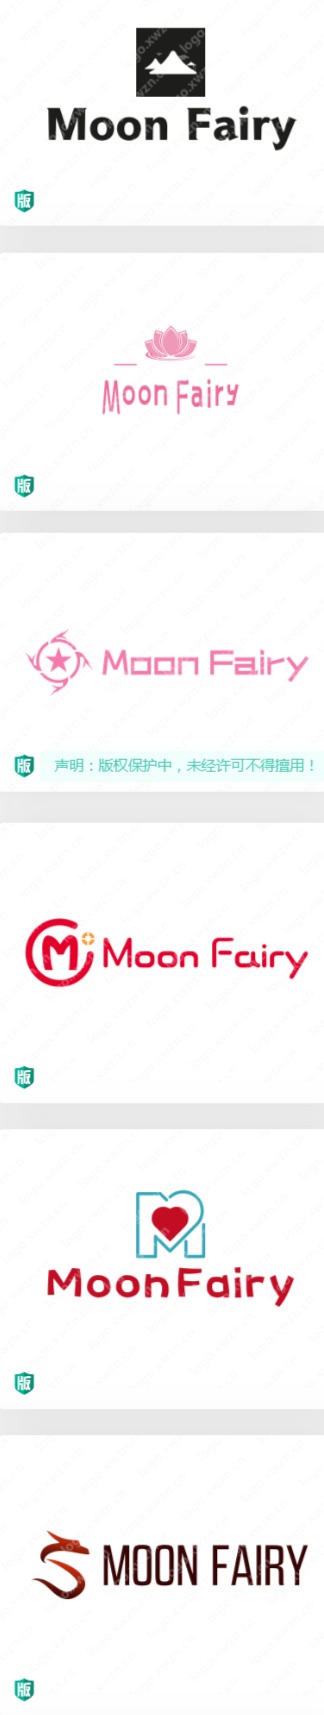 饰品英文名“Moon Fairy”logo设计作品合集